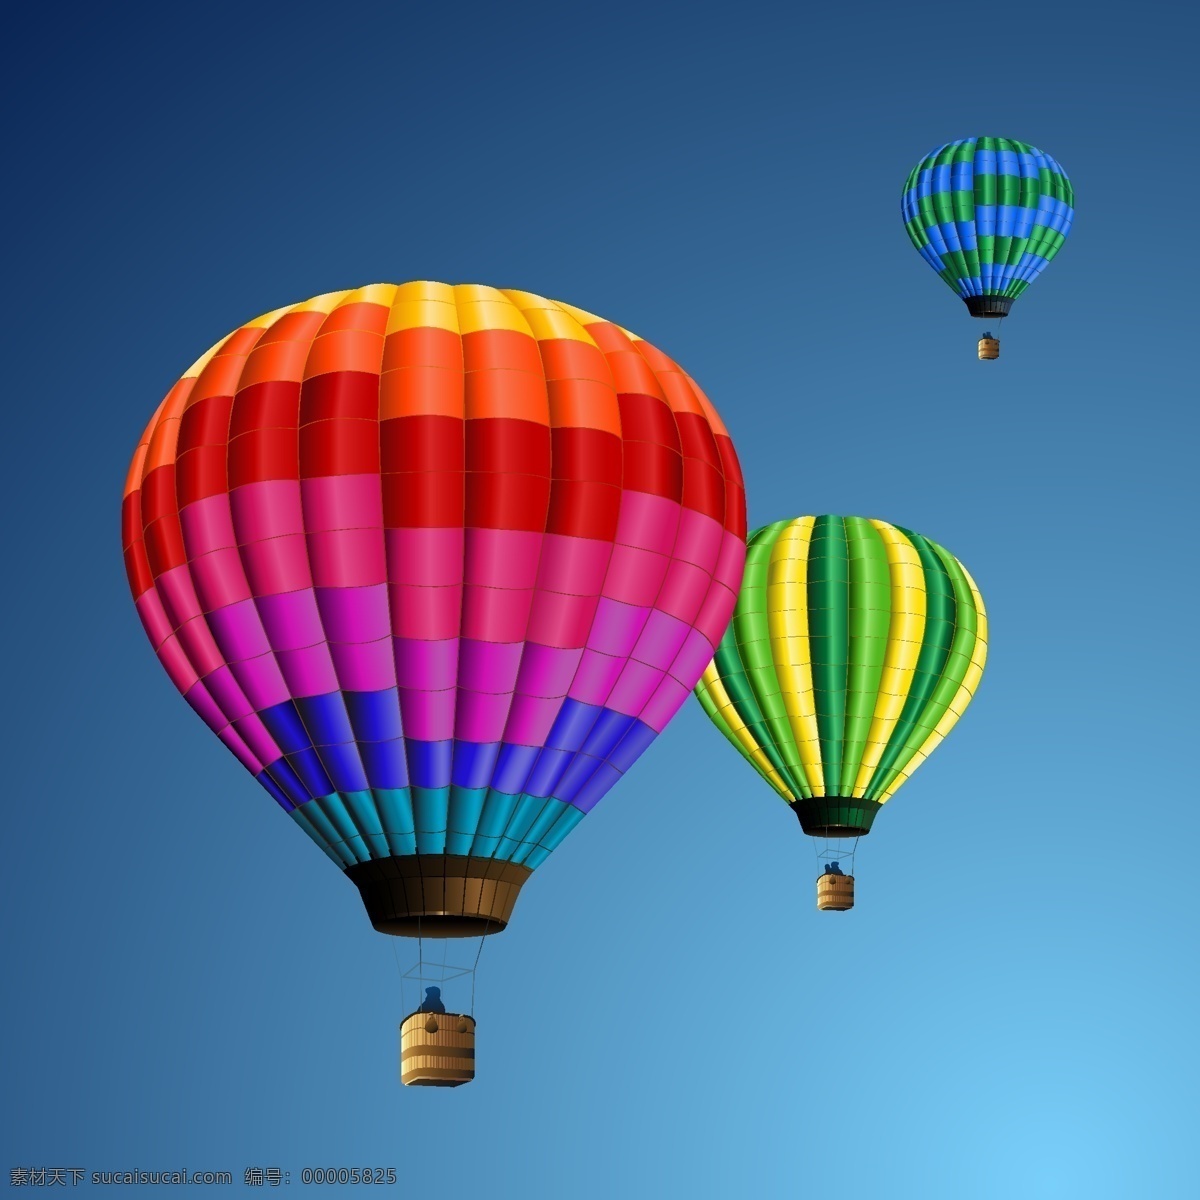 充满 活力 热气球 矢量 图形 web 背景 插画 创意 免费 质量 病 媒 生物 时尚 独特的 原始的 高质量 新鲜的 设计气球 丰富多彩的 载体 矢量图